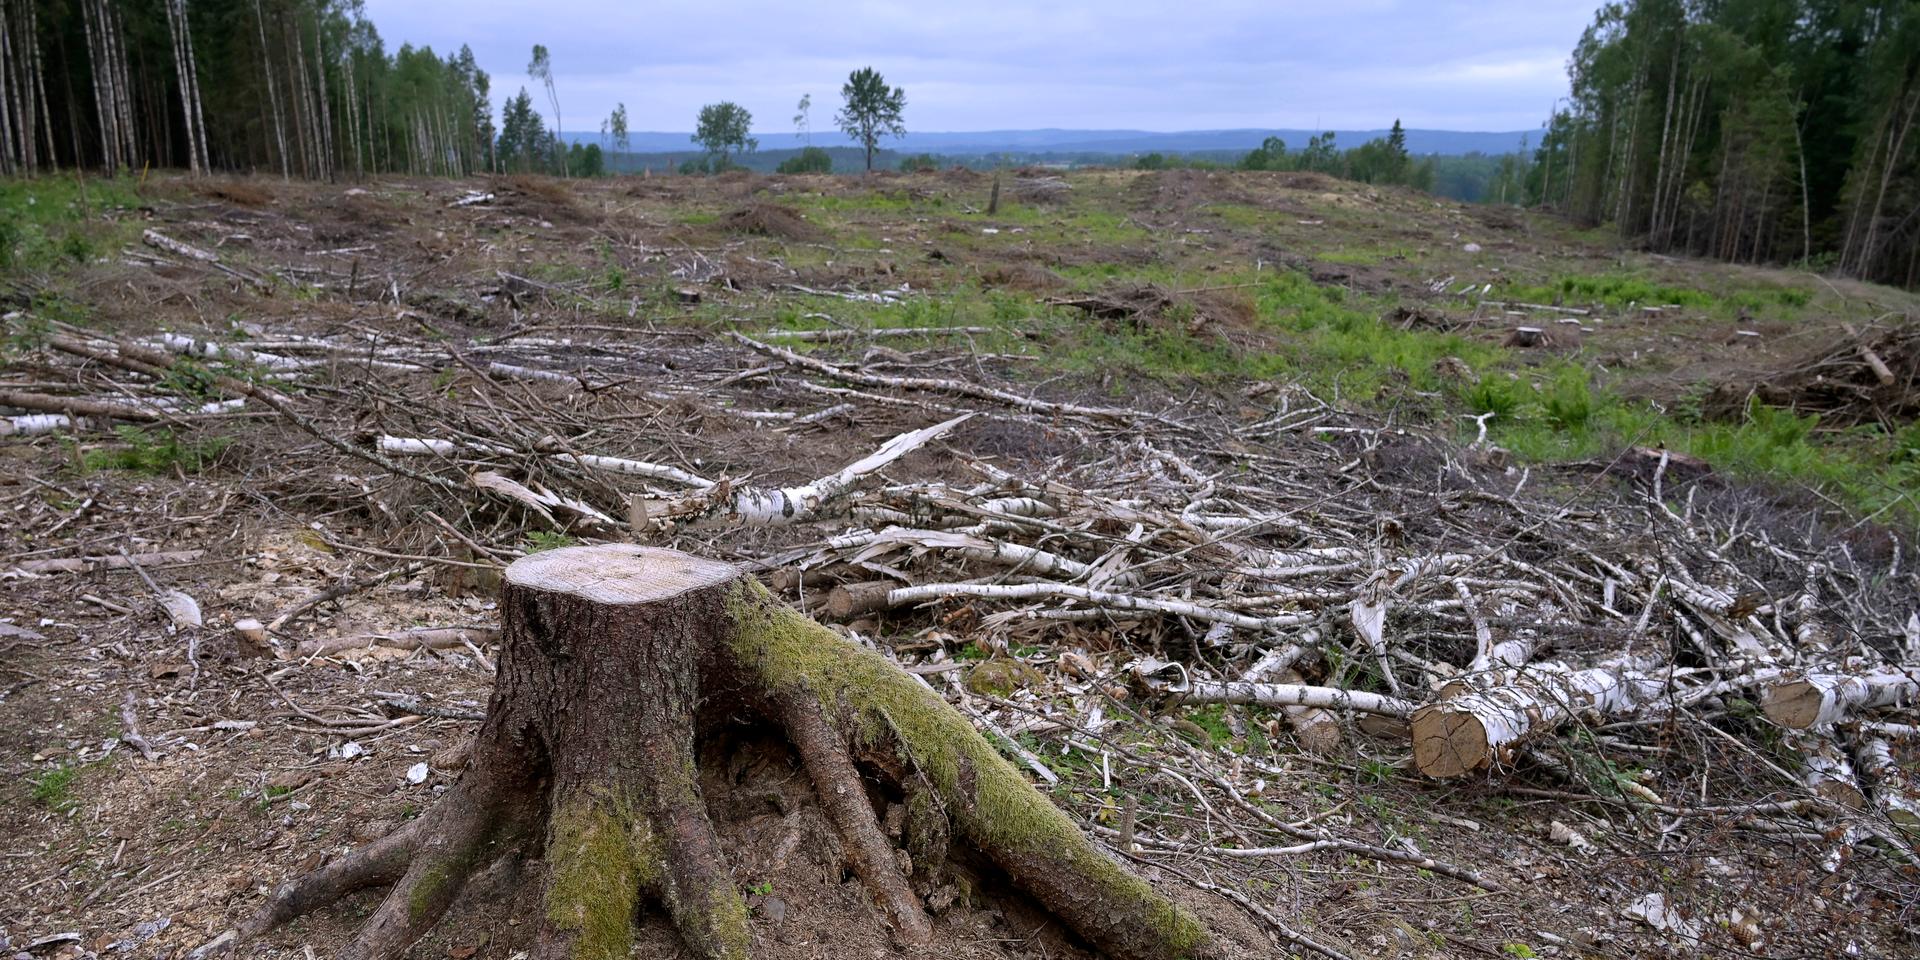 ”Efter kalhuggning läcker marken mycket kol i ett par decennier. Växande skog ska ersätta detta samt avlägsnad skog.” 